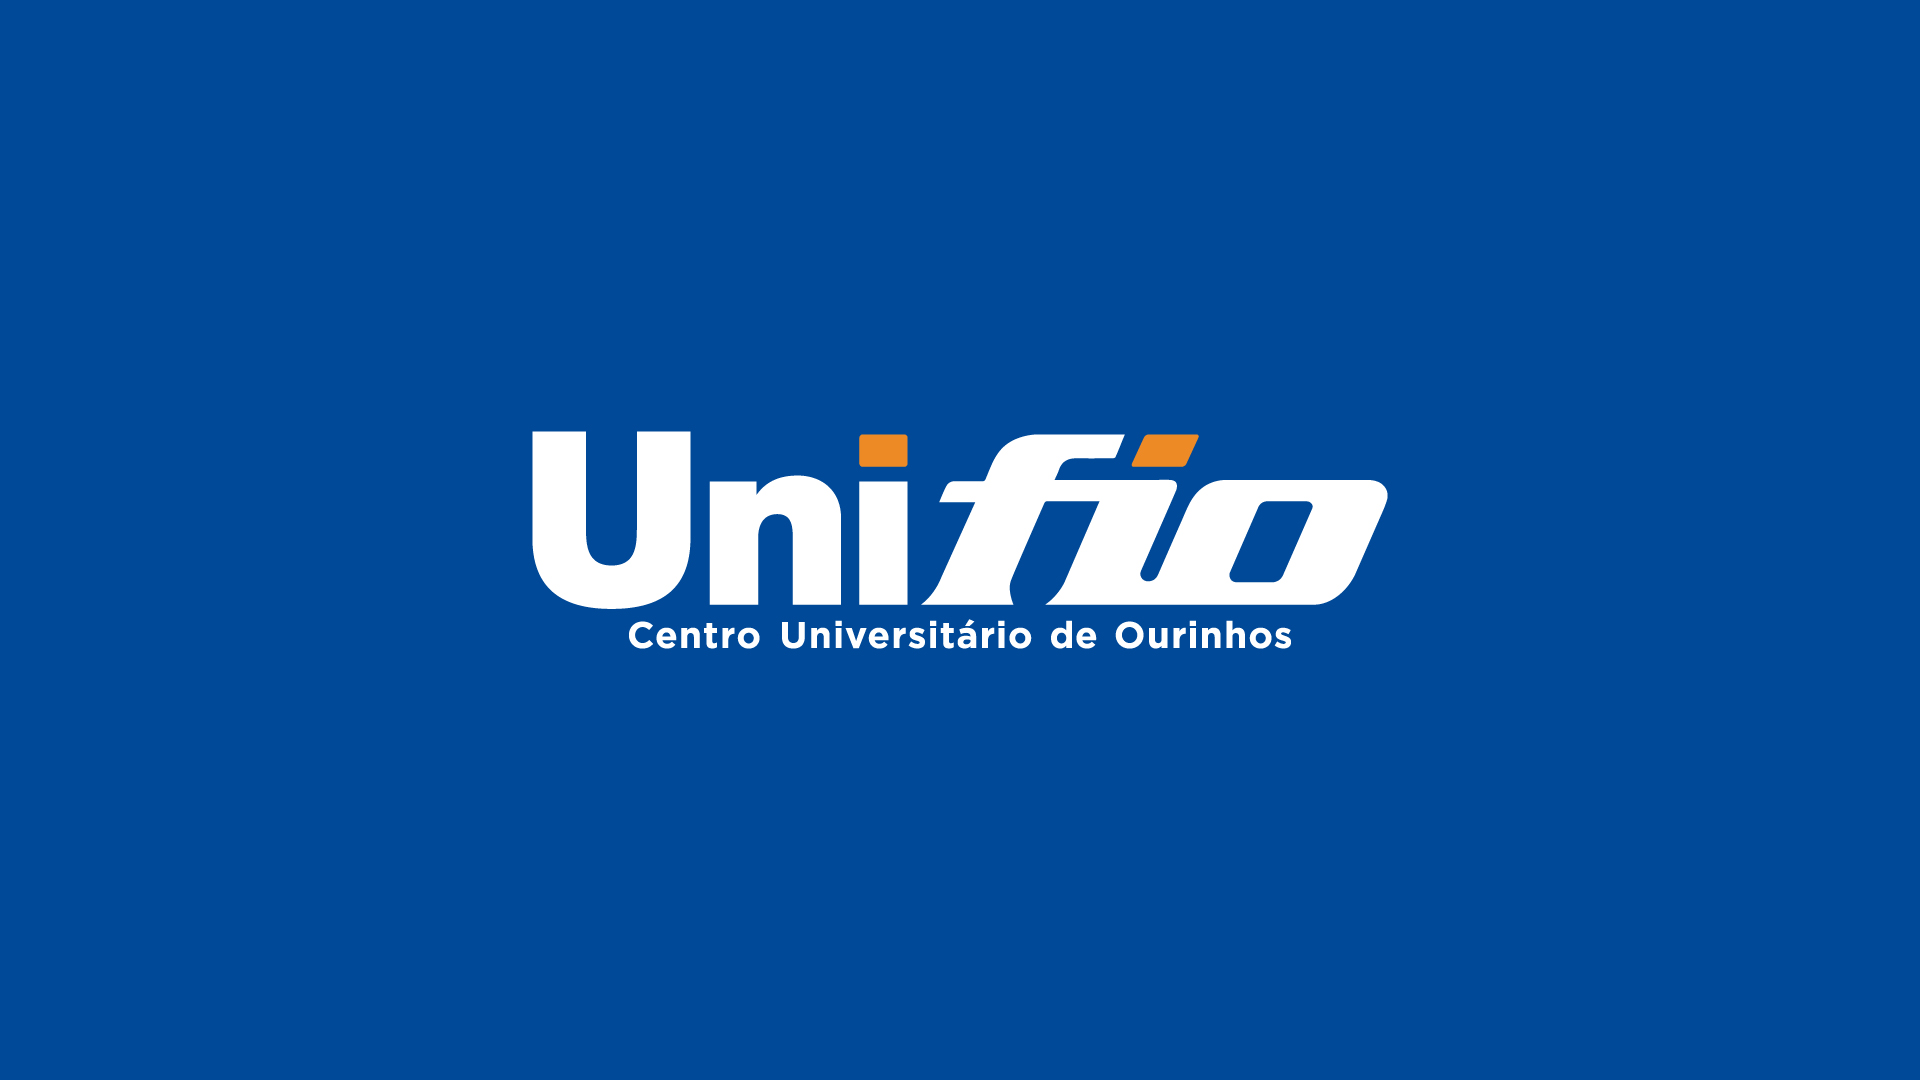 Capa da estratégia de marketing para o centro universitário Unifio, realizado pela agência Social Brain